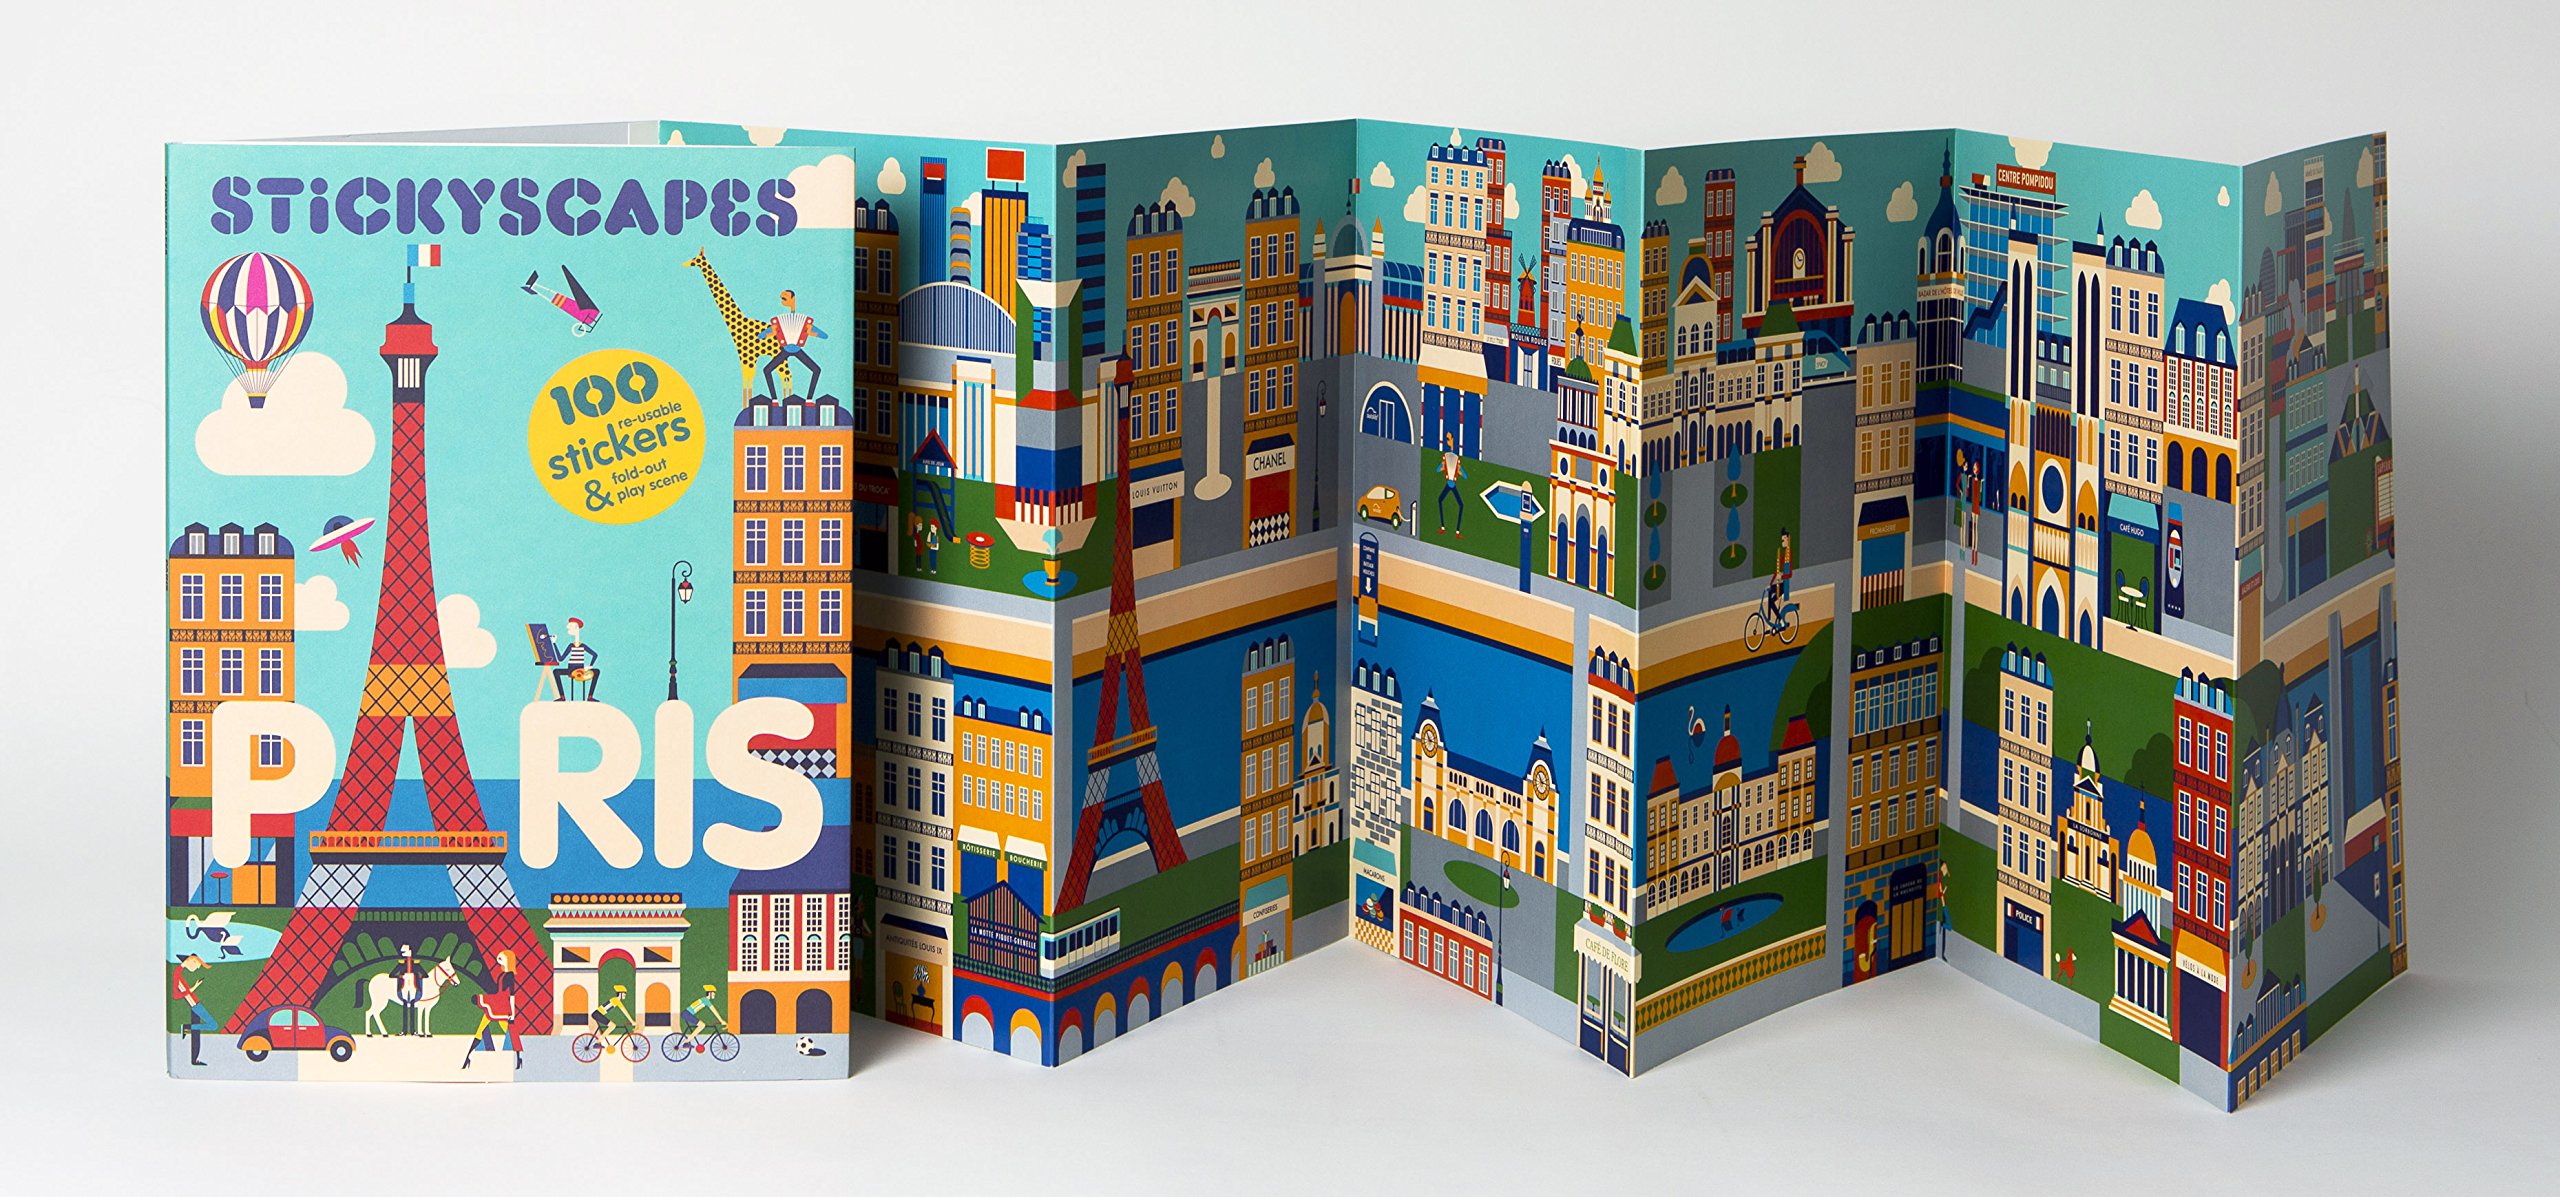 Stickyscapes Paris | Malika Favre